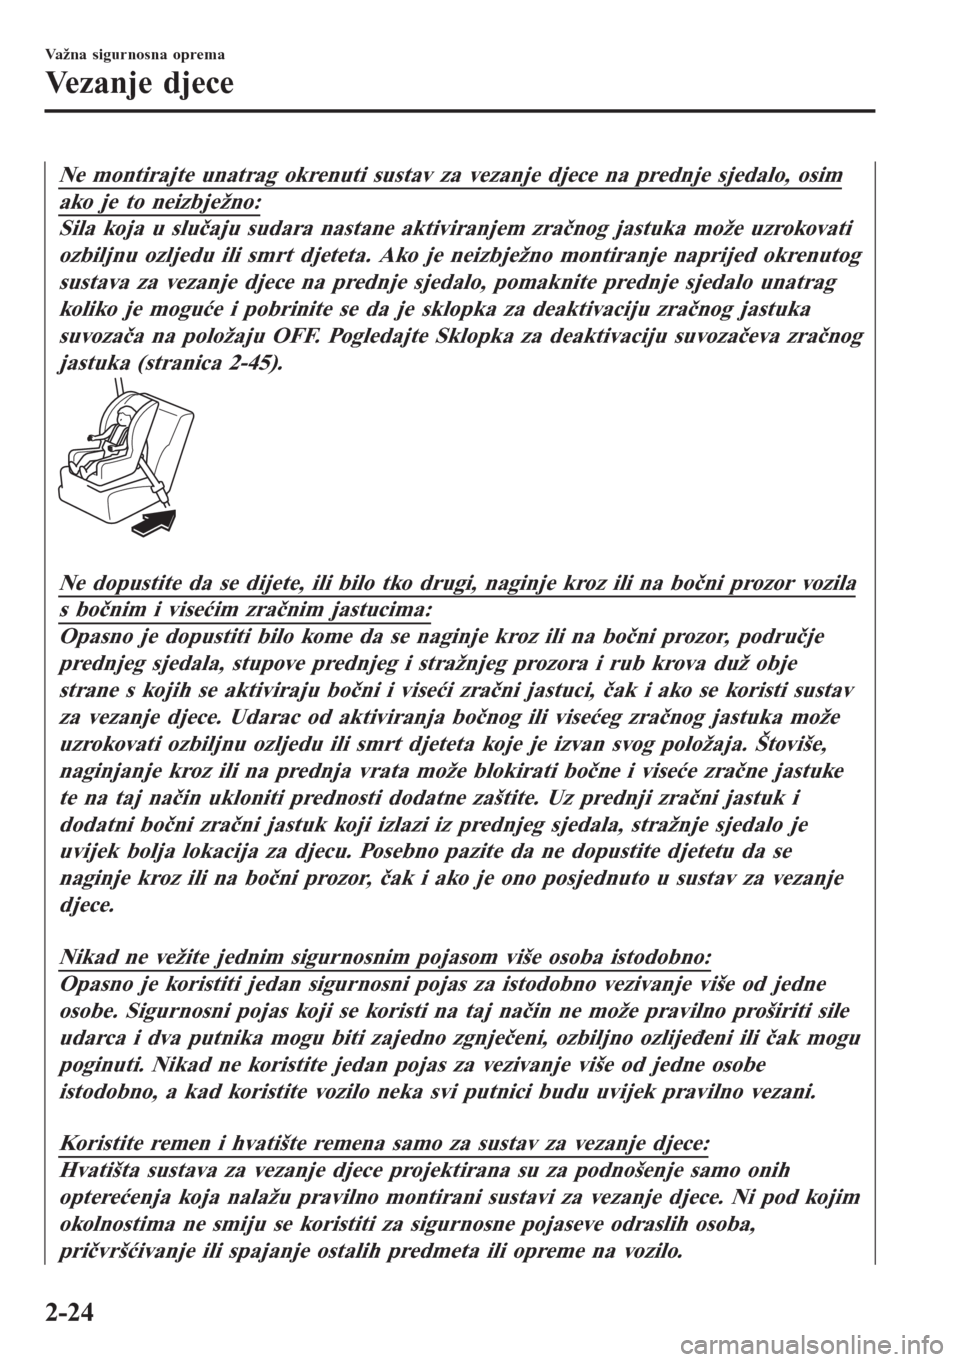 MAZDA MODEL CX-3 2016  Upute za uporabu (in Croatian) Ne montirajte unatrag okrenuti sustav za vezanje djece na prednje sjedalo, osim
ako je to neizbježno:
Sila koja u slučaju sudara nastane aktiviranjem zračnog jastuka može uzrokovati
ozbiljnu ozlje